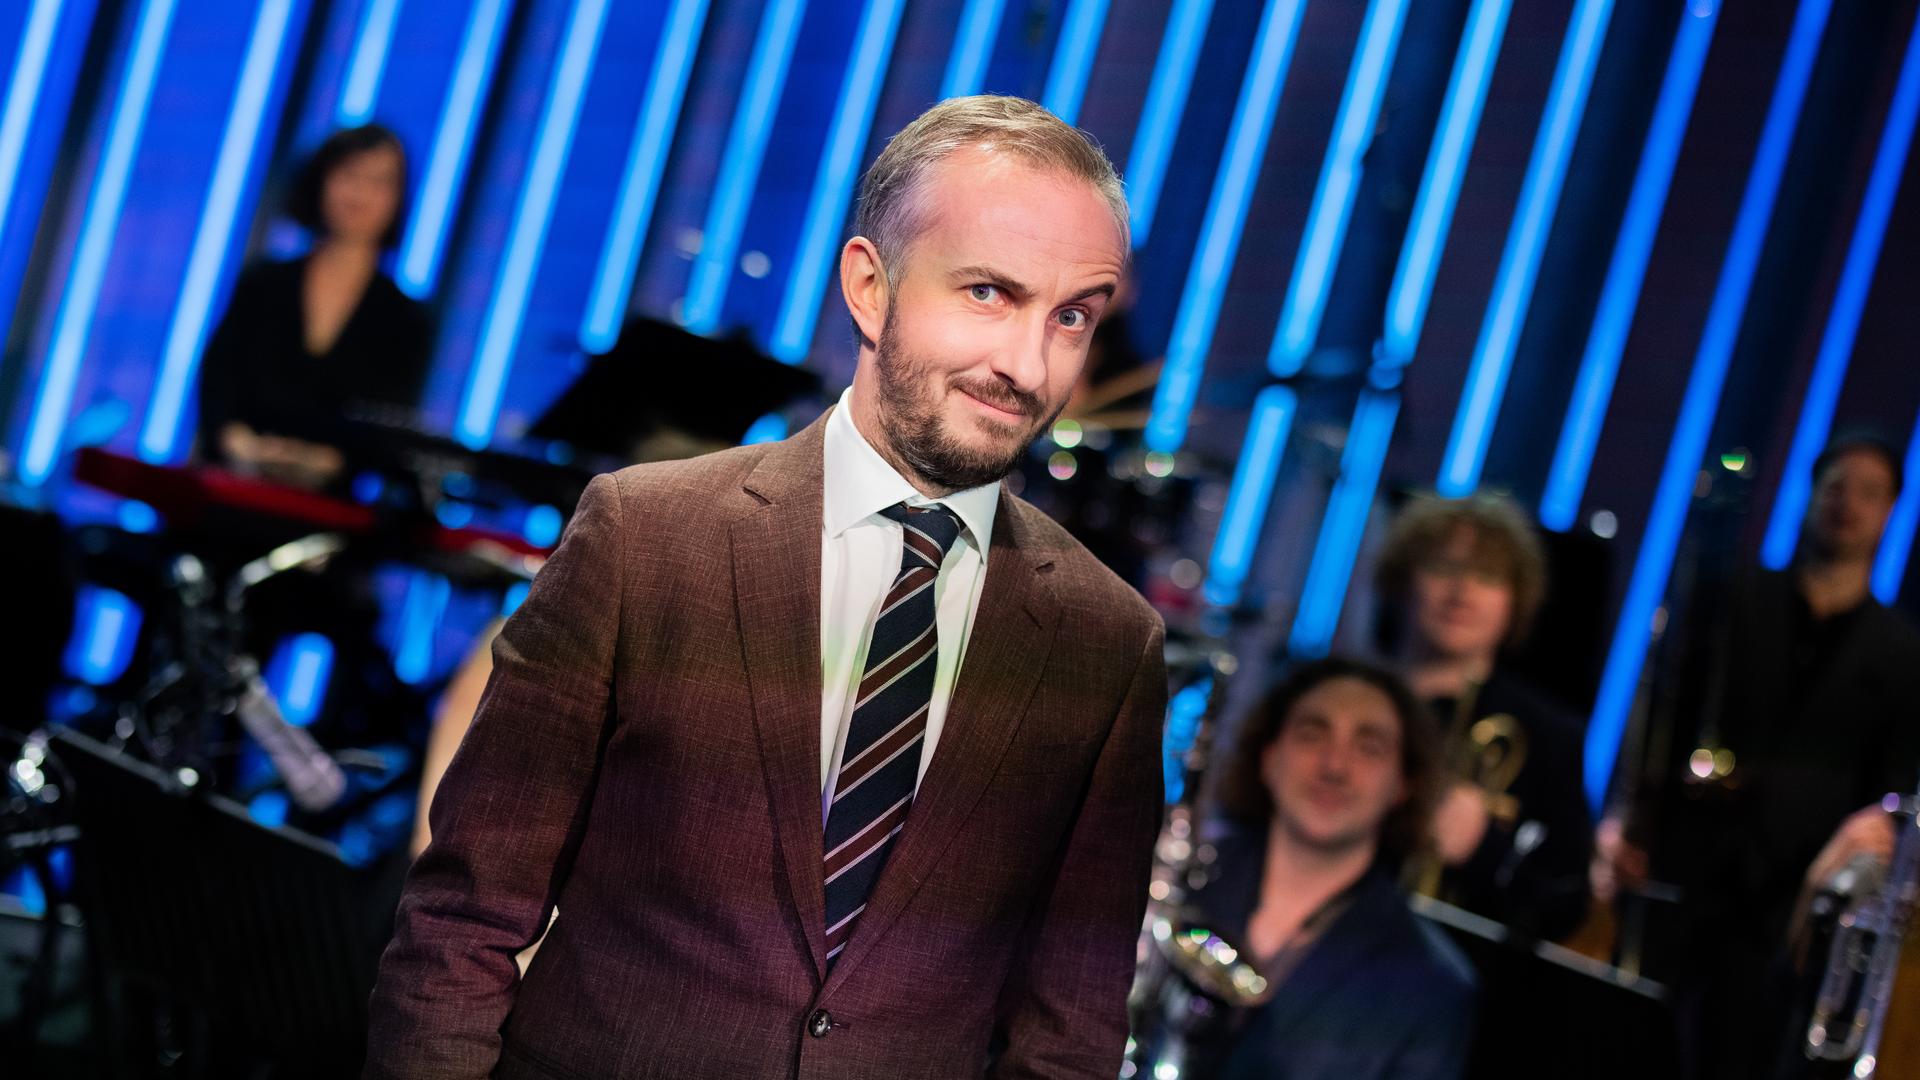 Jan Böhmermann steht im Studio des ZDF Magazin Royal vor seinem Orchester und macht eine ironische Grimasse mit hochgezogener Augenbraue.